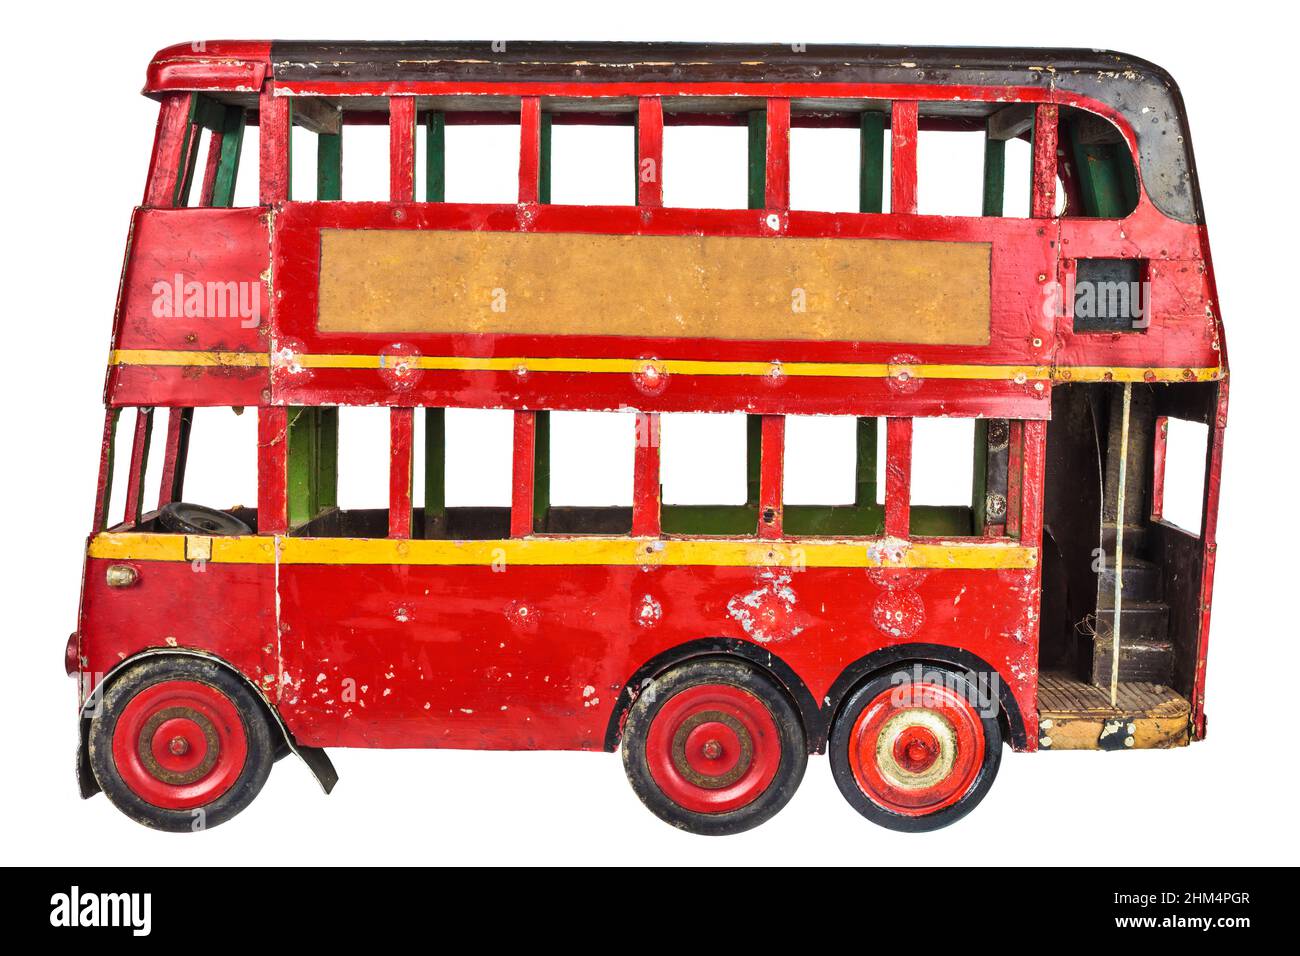 Vintage rouge anglais London bus jouet isolé sur un fond blanc Banque D'Images